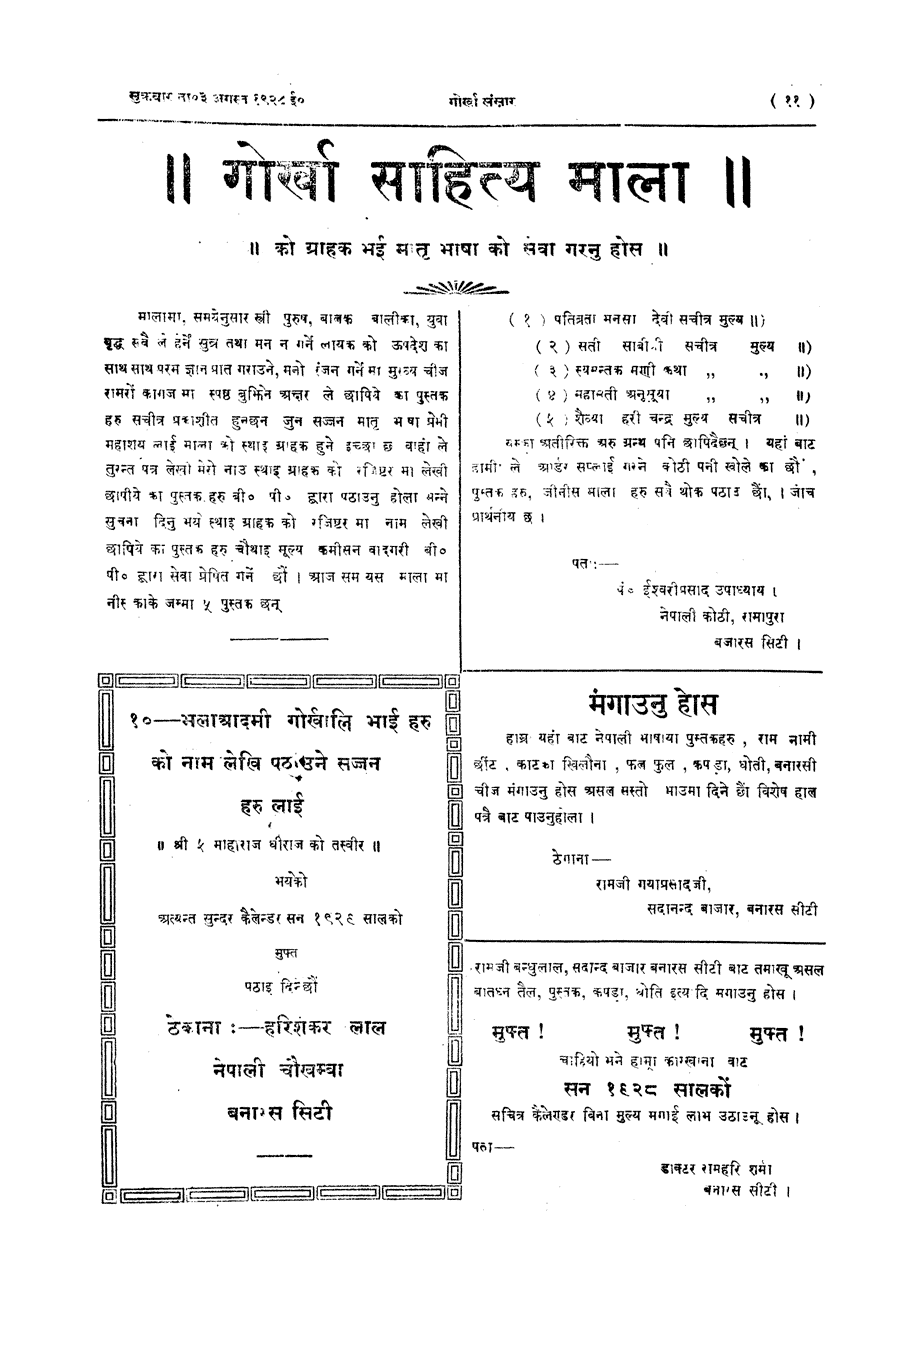 Gorkha Sansar, 3 Aug 1928, page 11